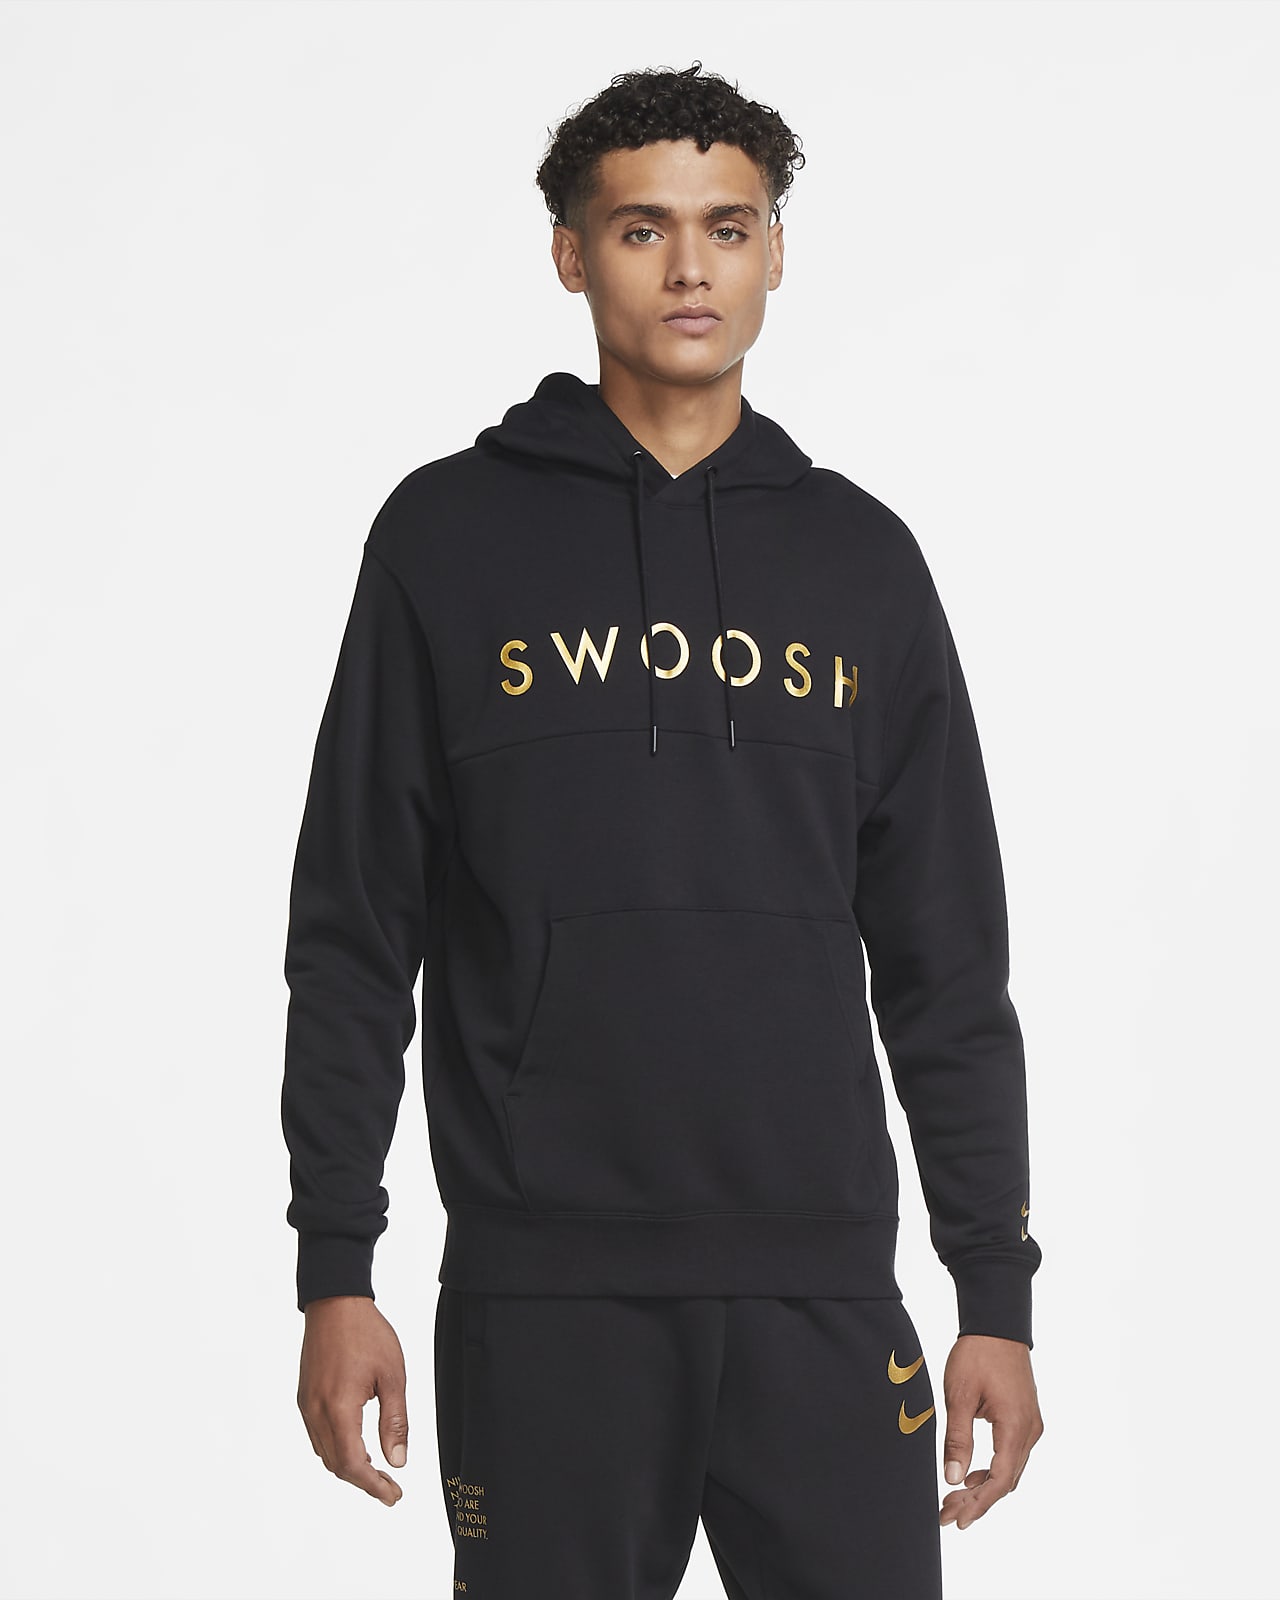 nike logo pullover hoodie